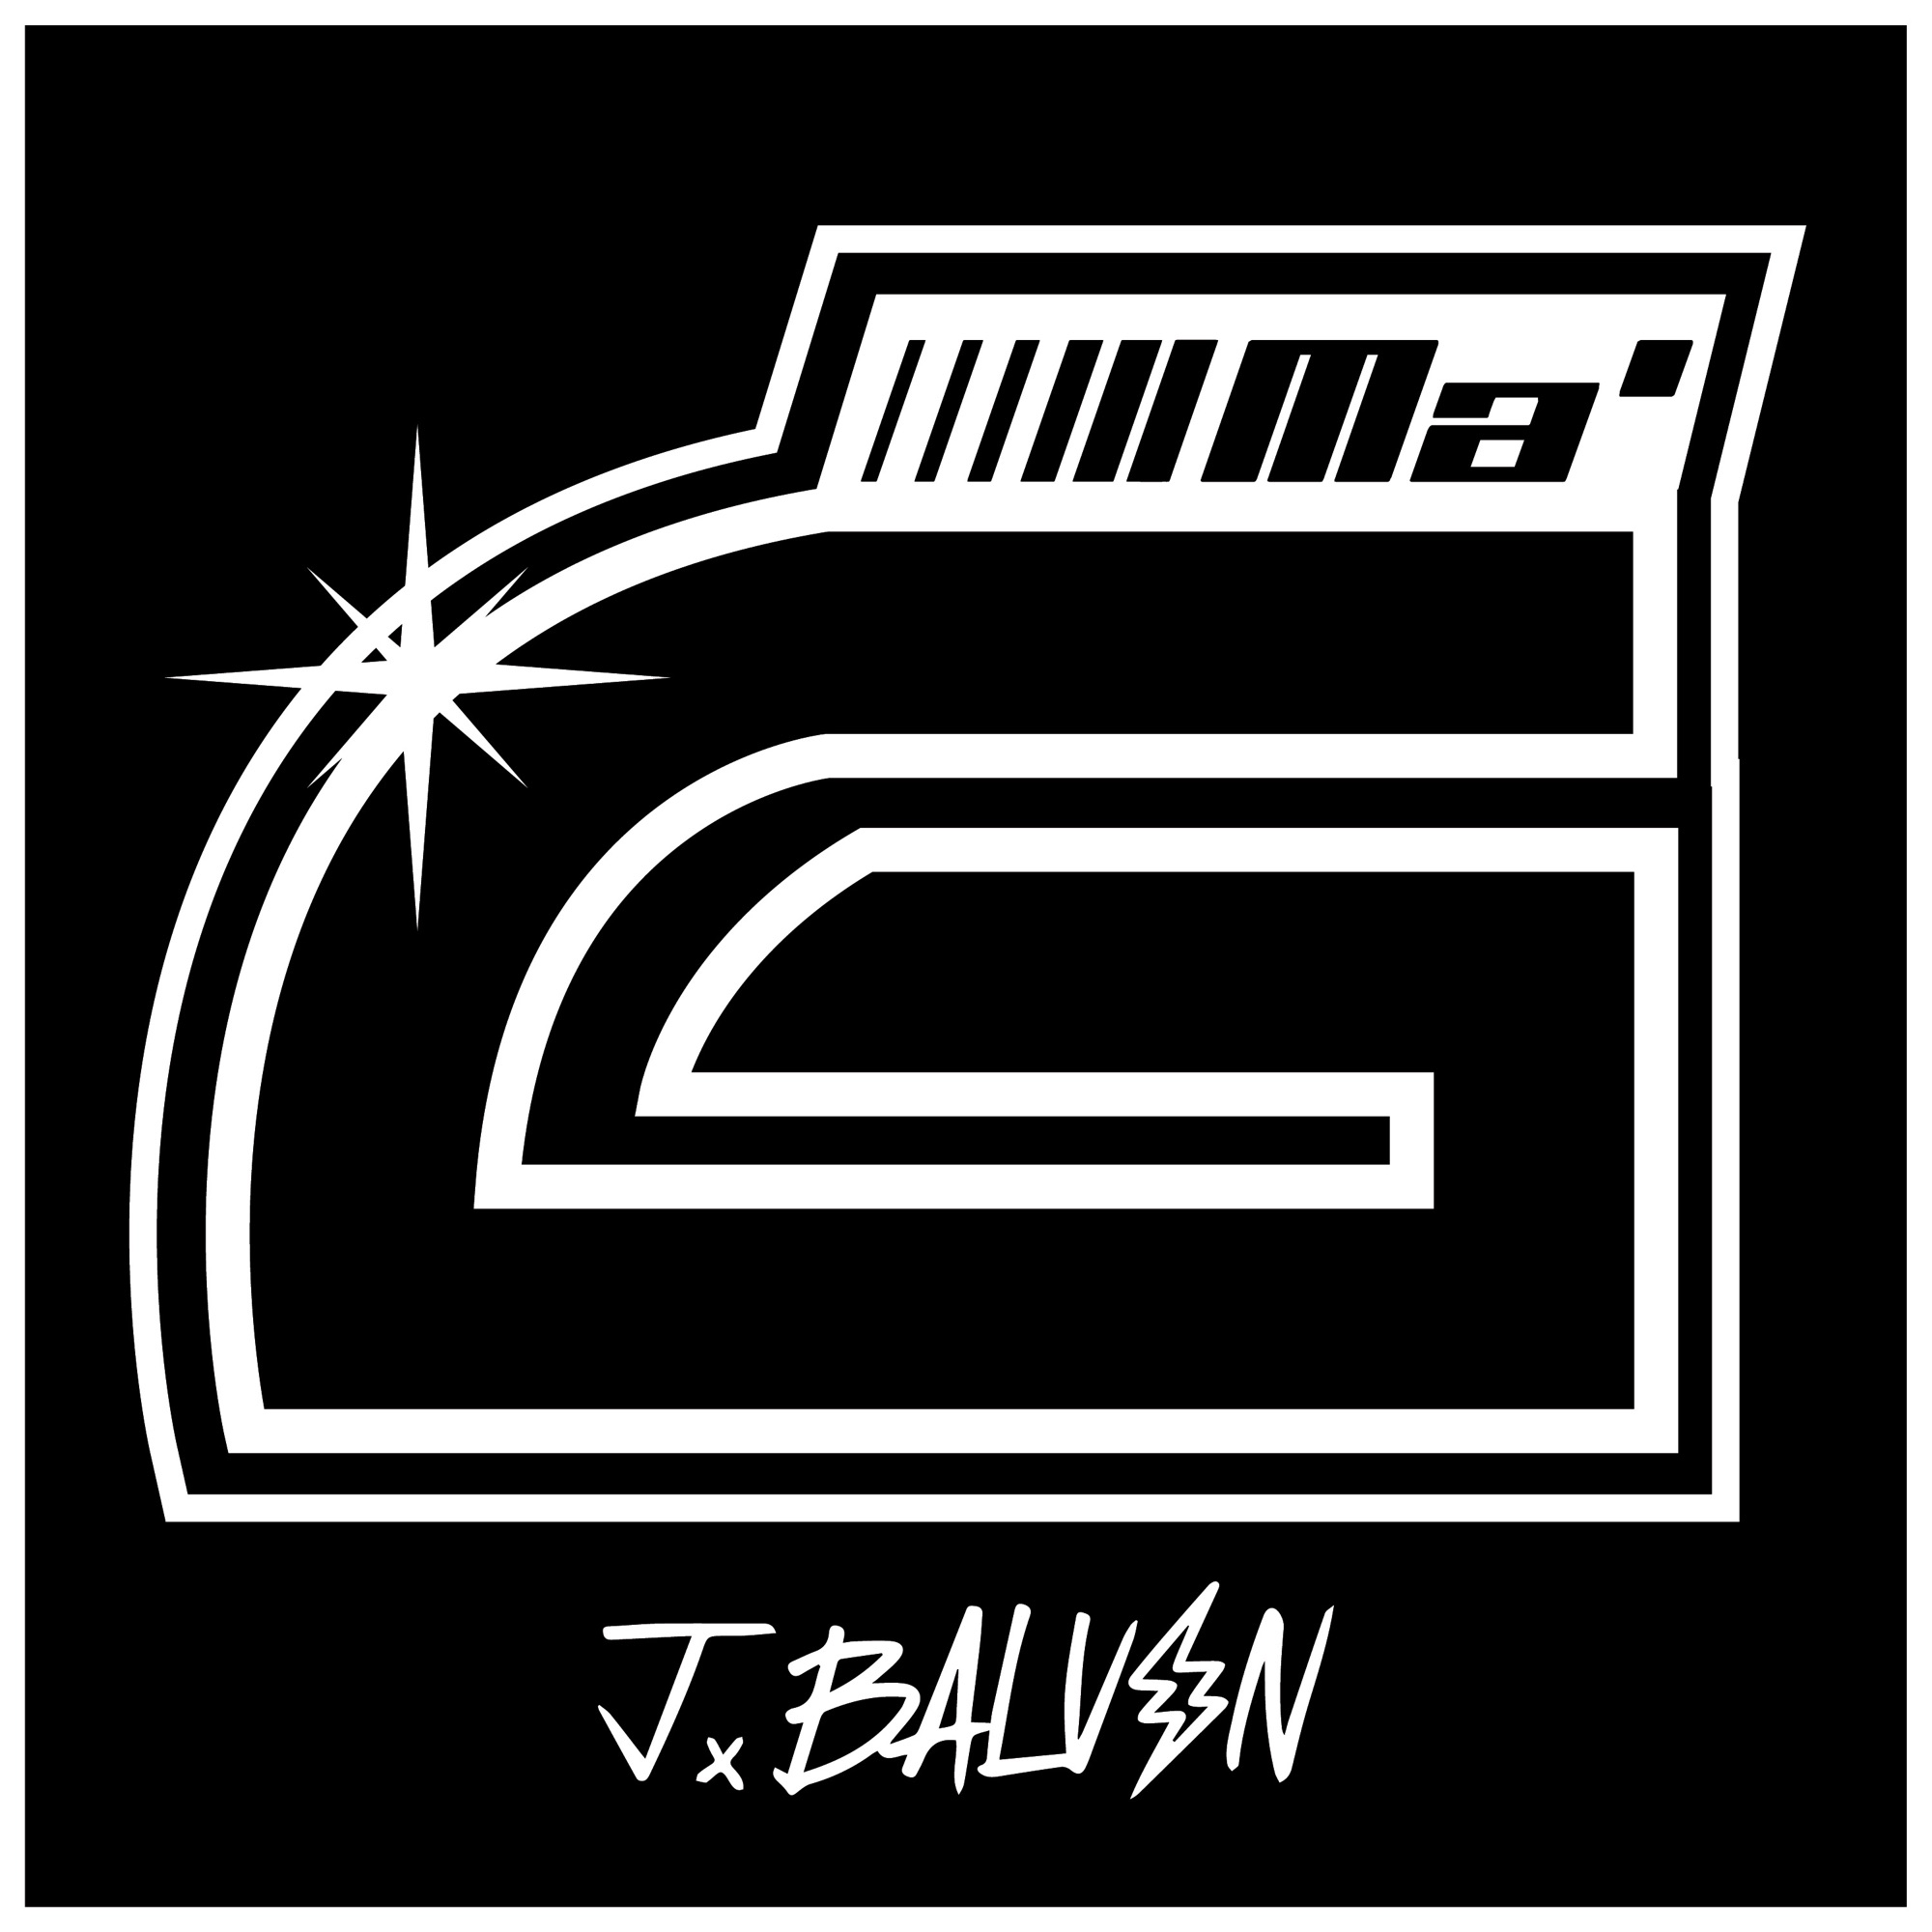 J Balvin - Ma' G - Single